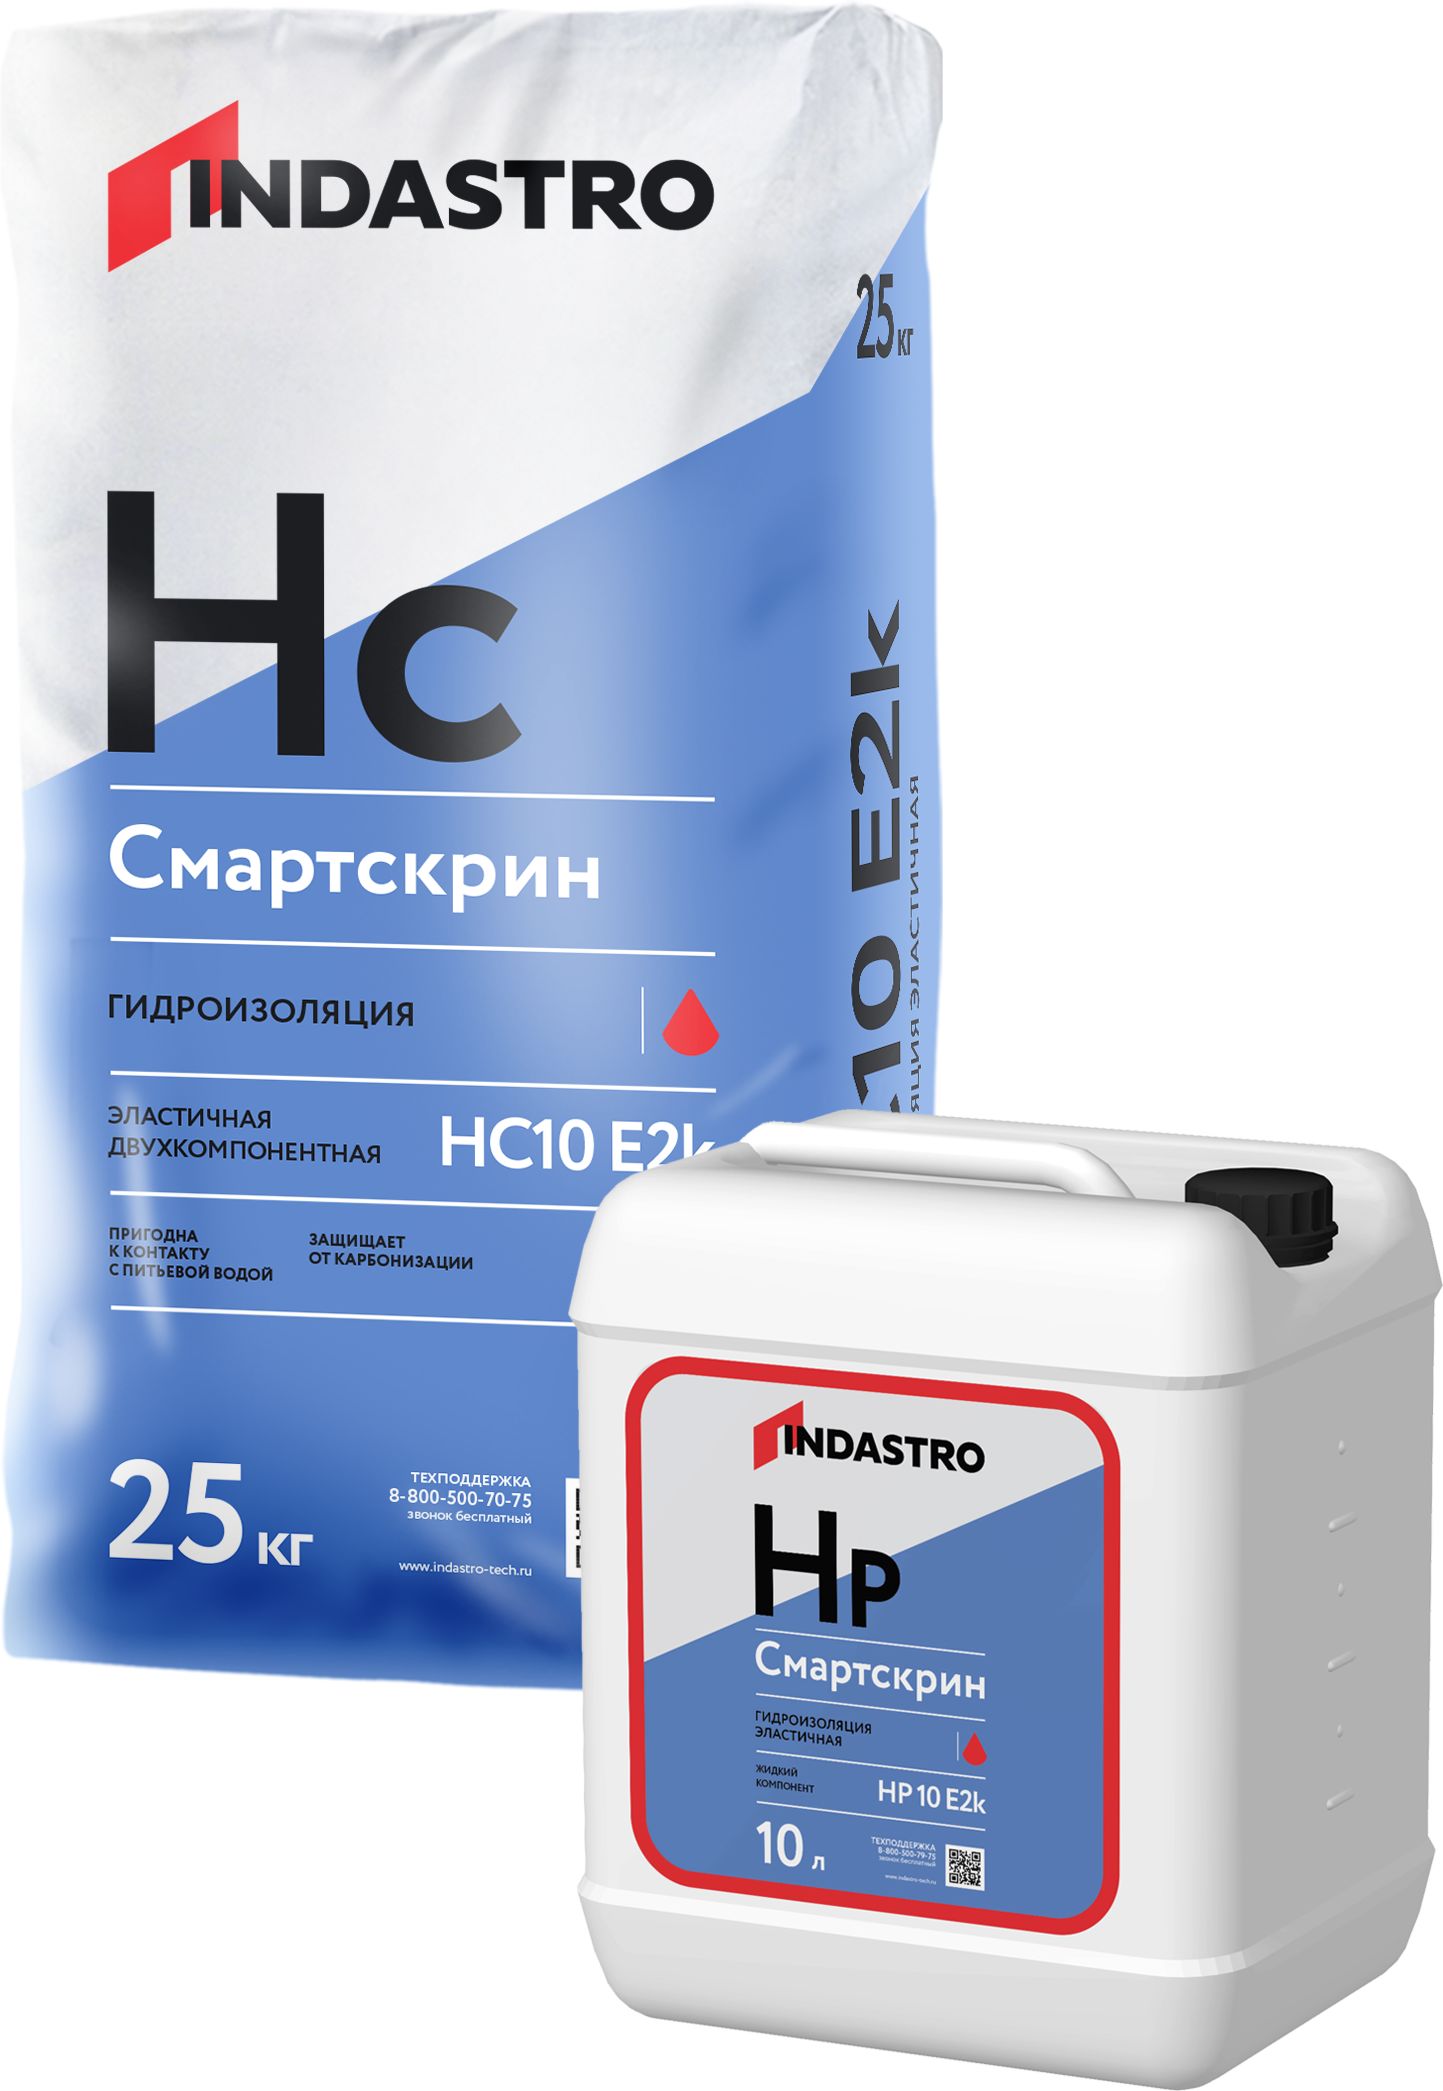 Эластичная гидроизоляция Смартскрин HP10 E2k (жидкий компонент) 10л